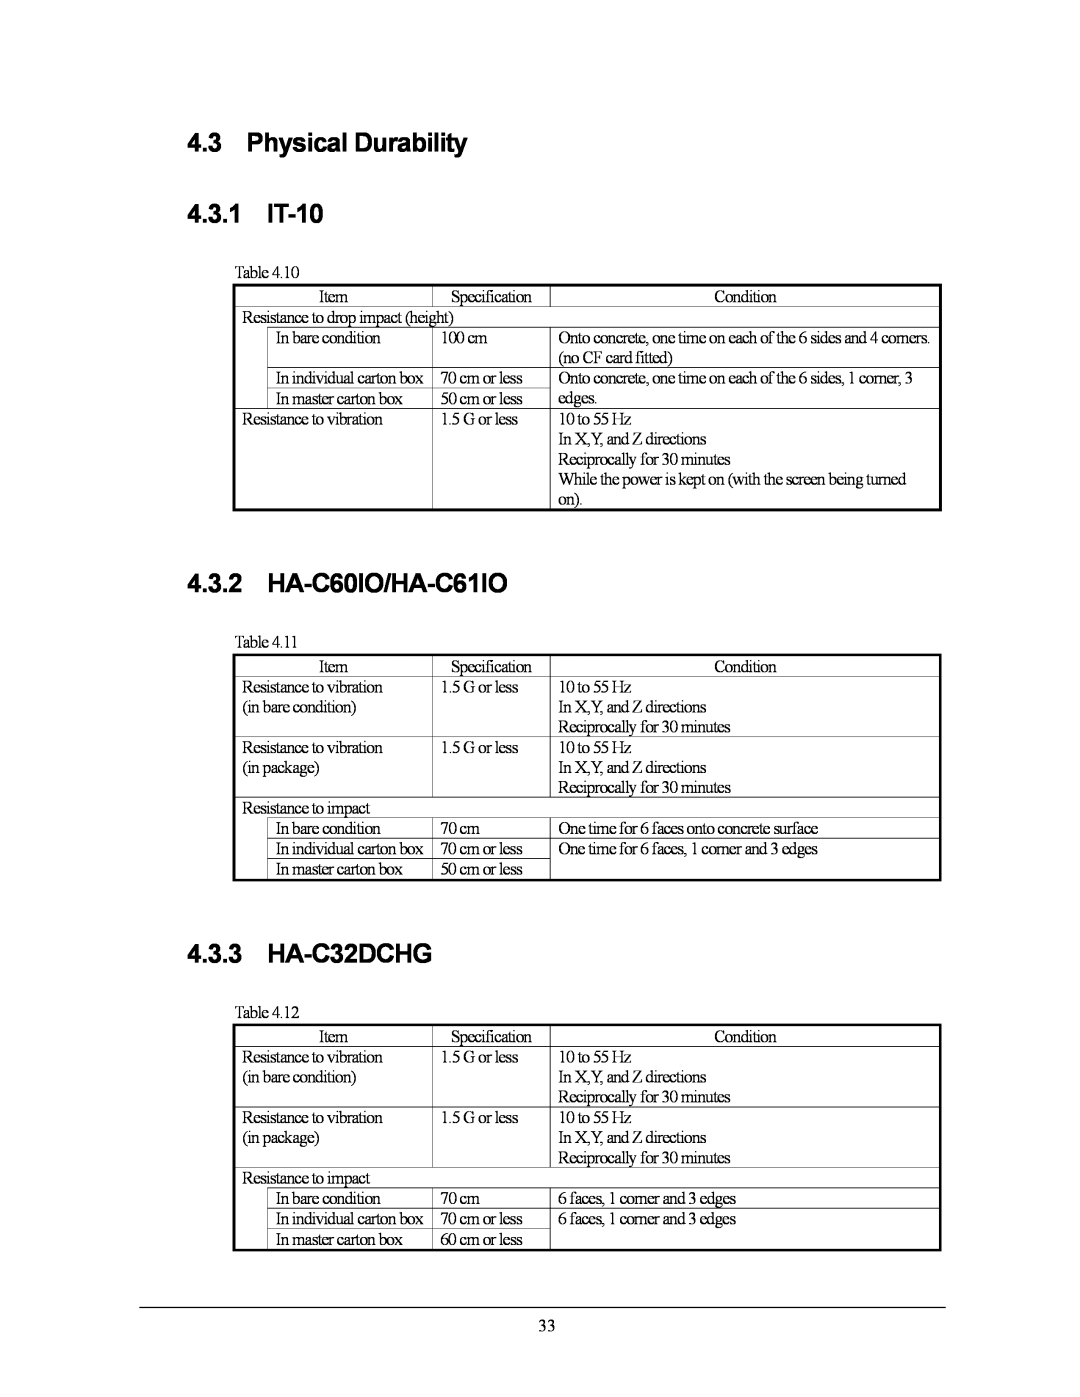 Casio 10M30BR, IT-10M20 manual Physical Durability, HA-C60IO/HA-C61IO, 4.3.1, 4.3.3, HA-C32DCHG 